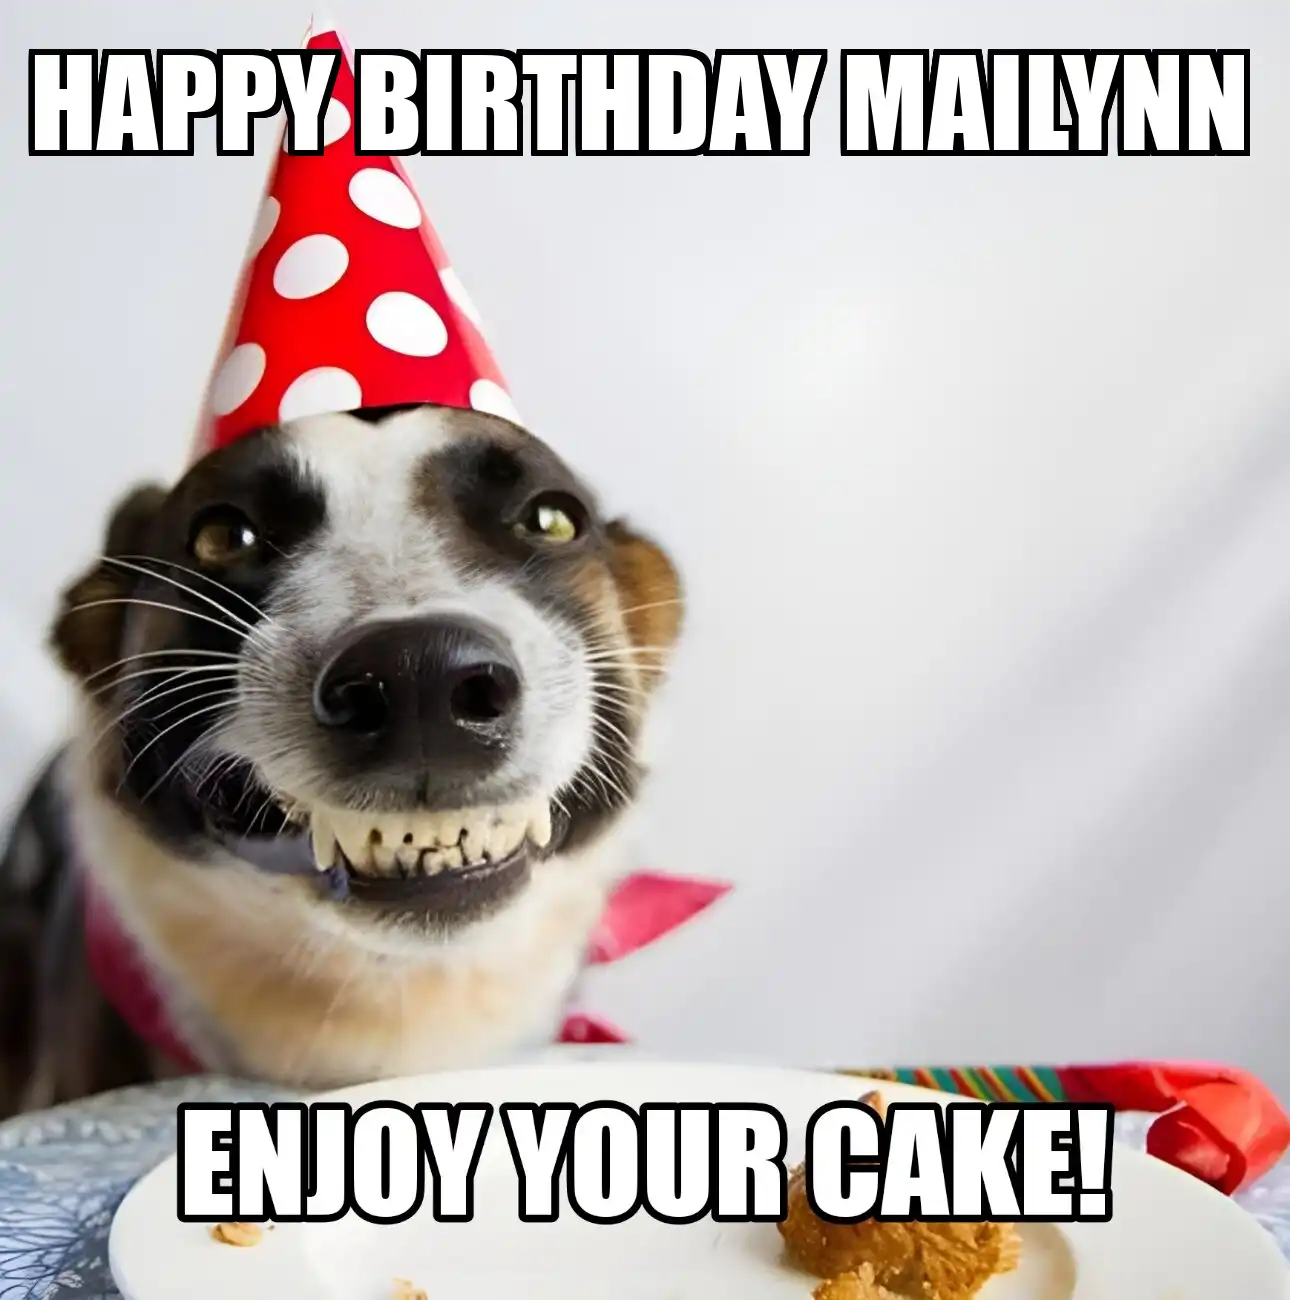 Happy Birthday Mailynn Enjoy Your Cake Dog Meme